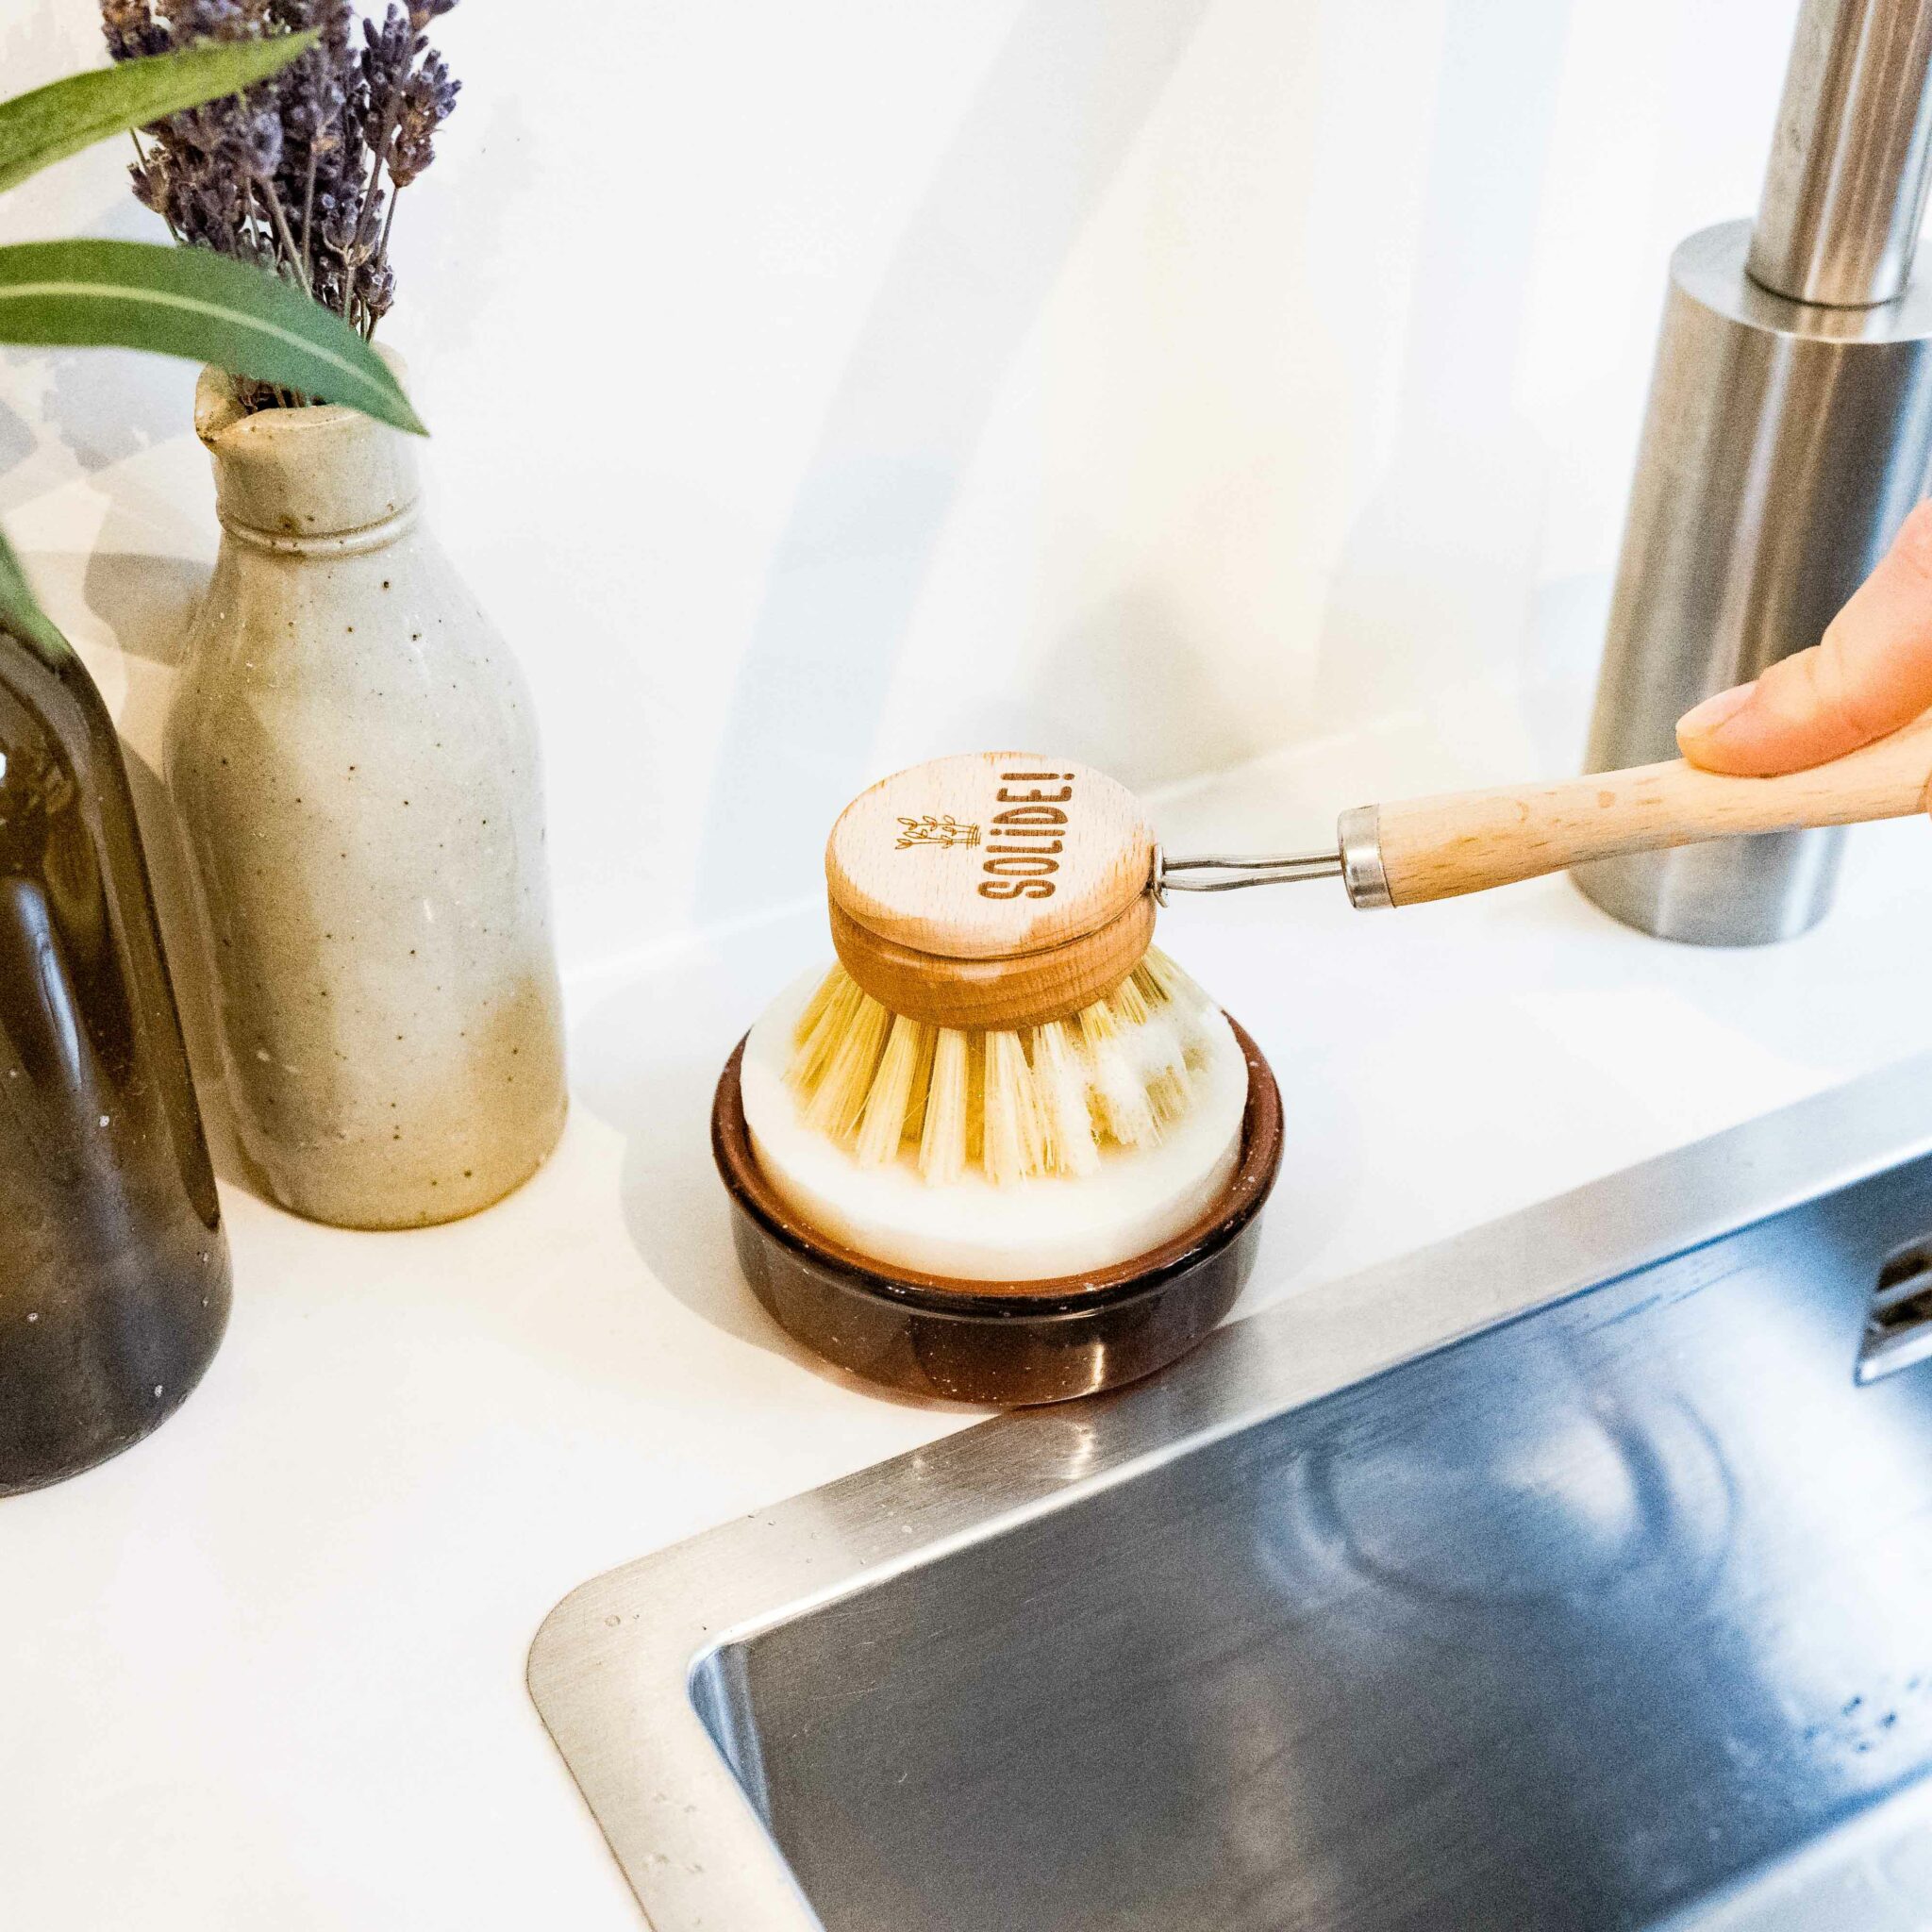 Le savon vaisselle solide pour passer au durable